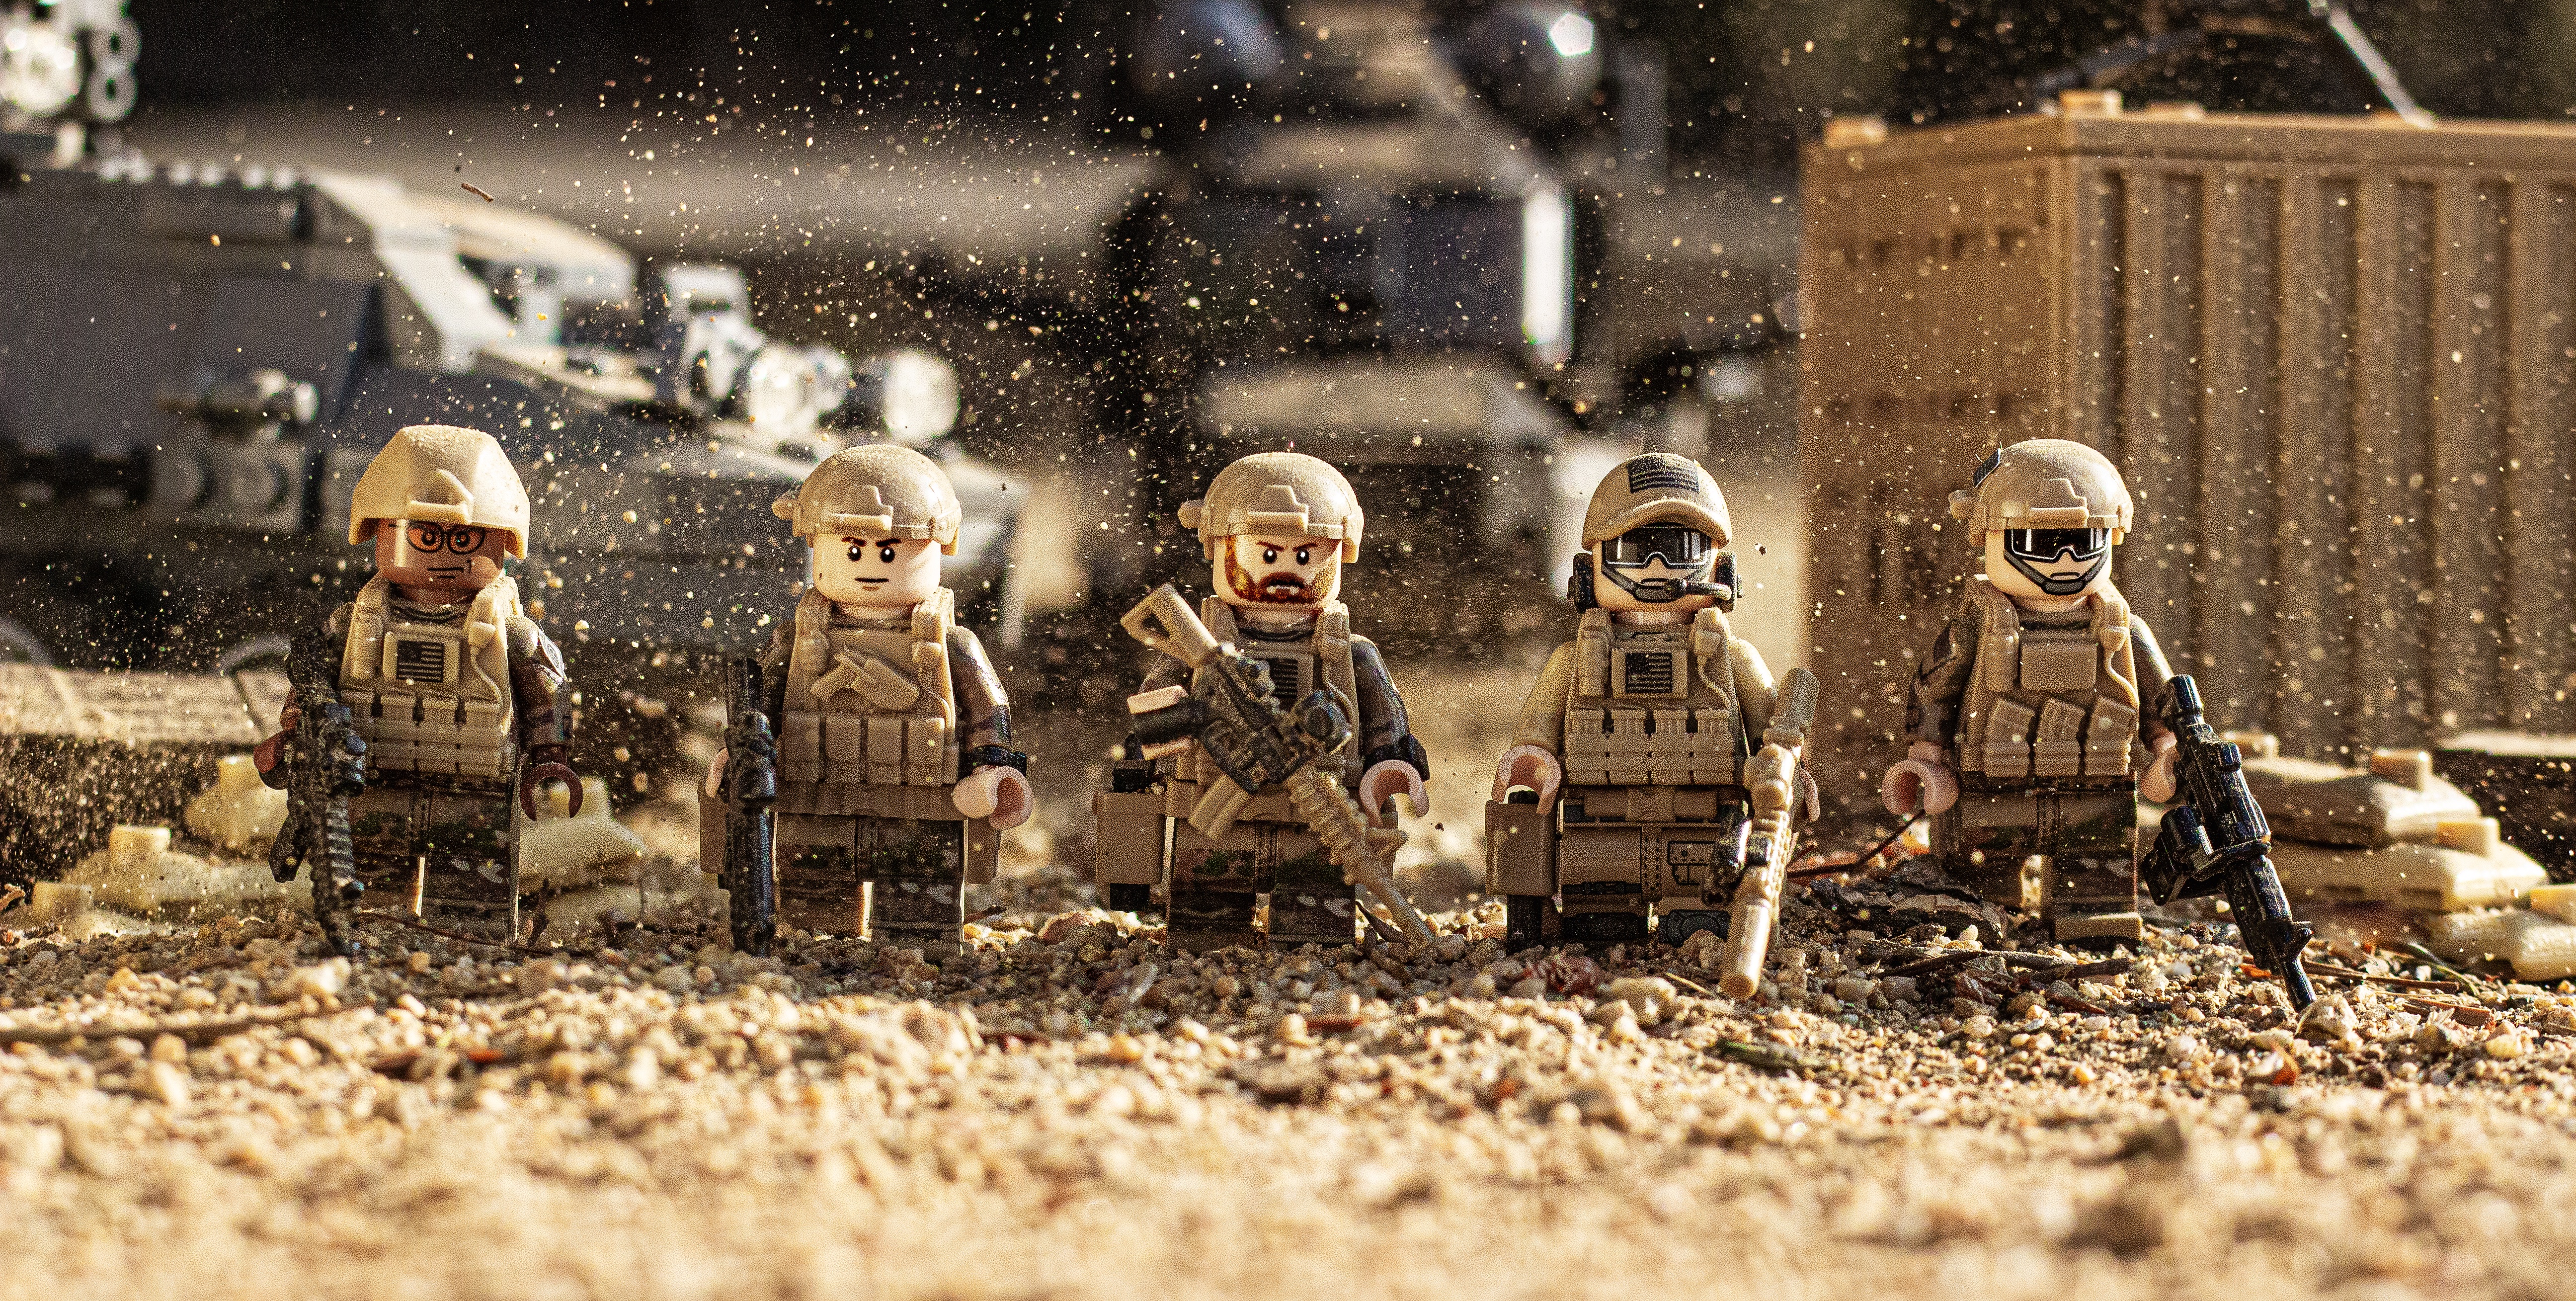 1x SWAT Police Militaire Mini Figures arme armée soldat Fits LEGO Toys UK Stock